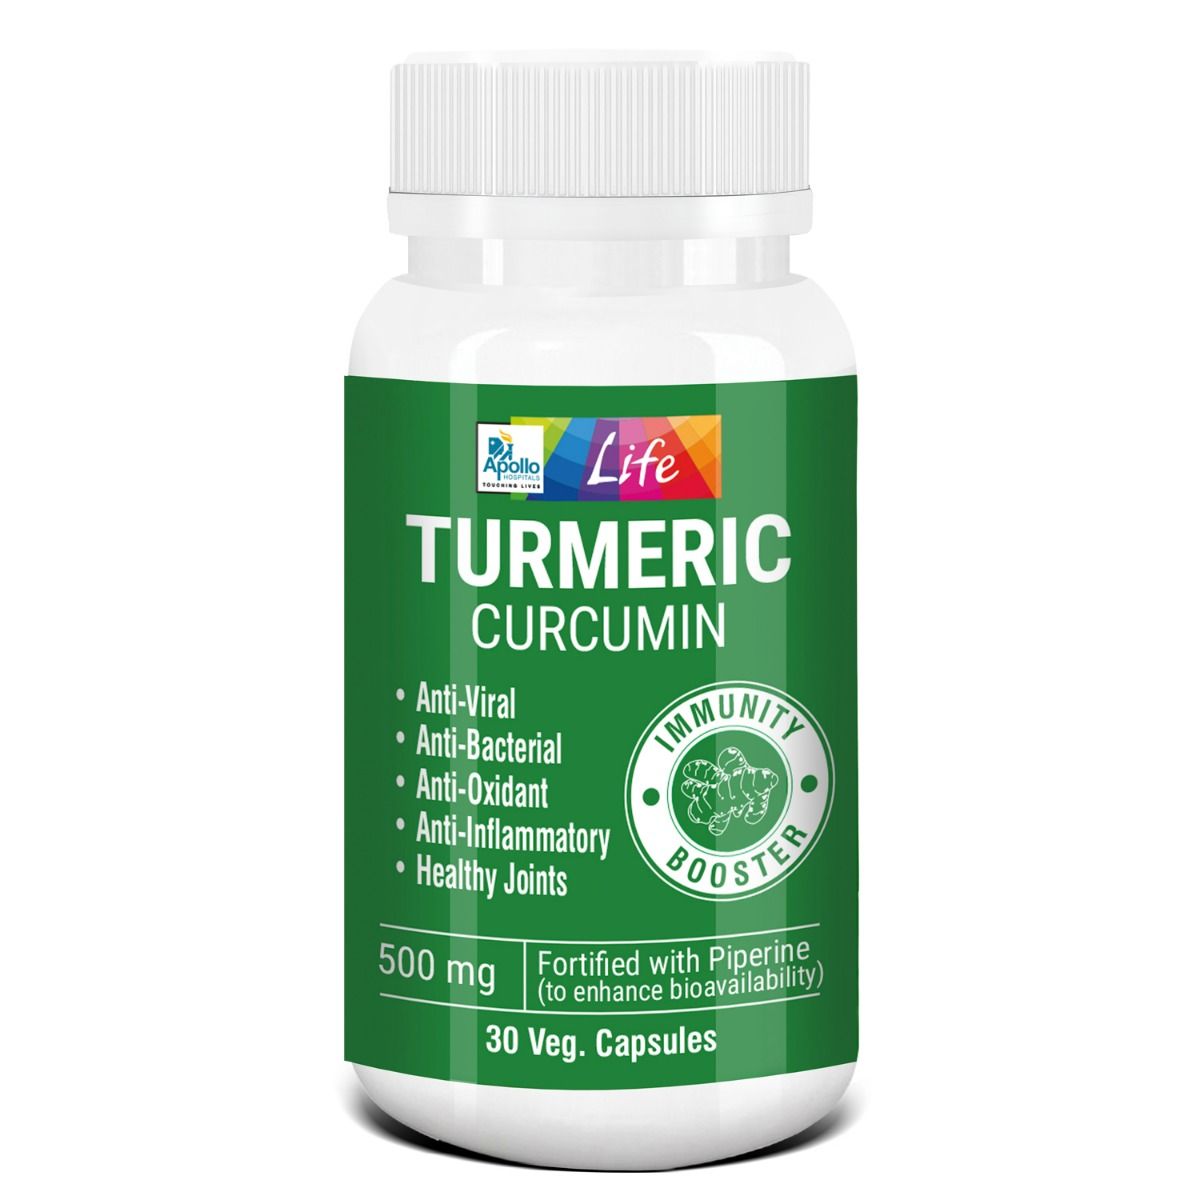 Buy Apollo Life Turmeric Curcumin 500 mg, 30 Capsules Online